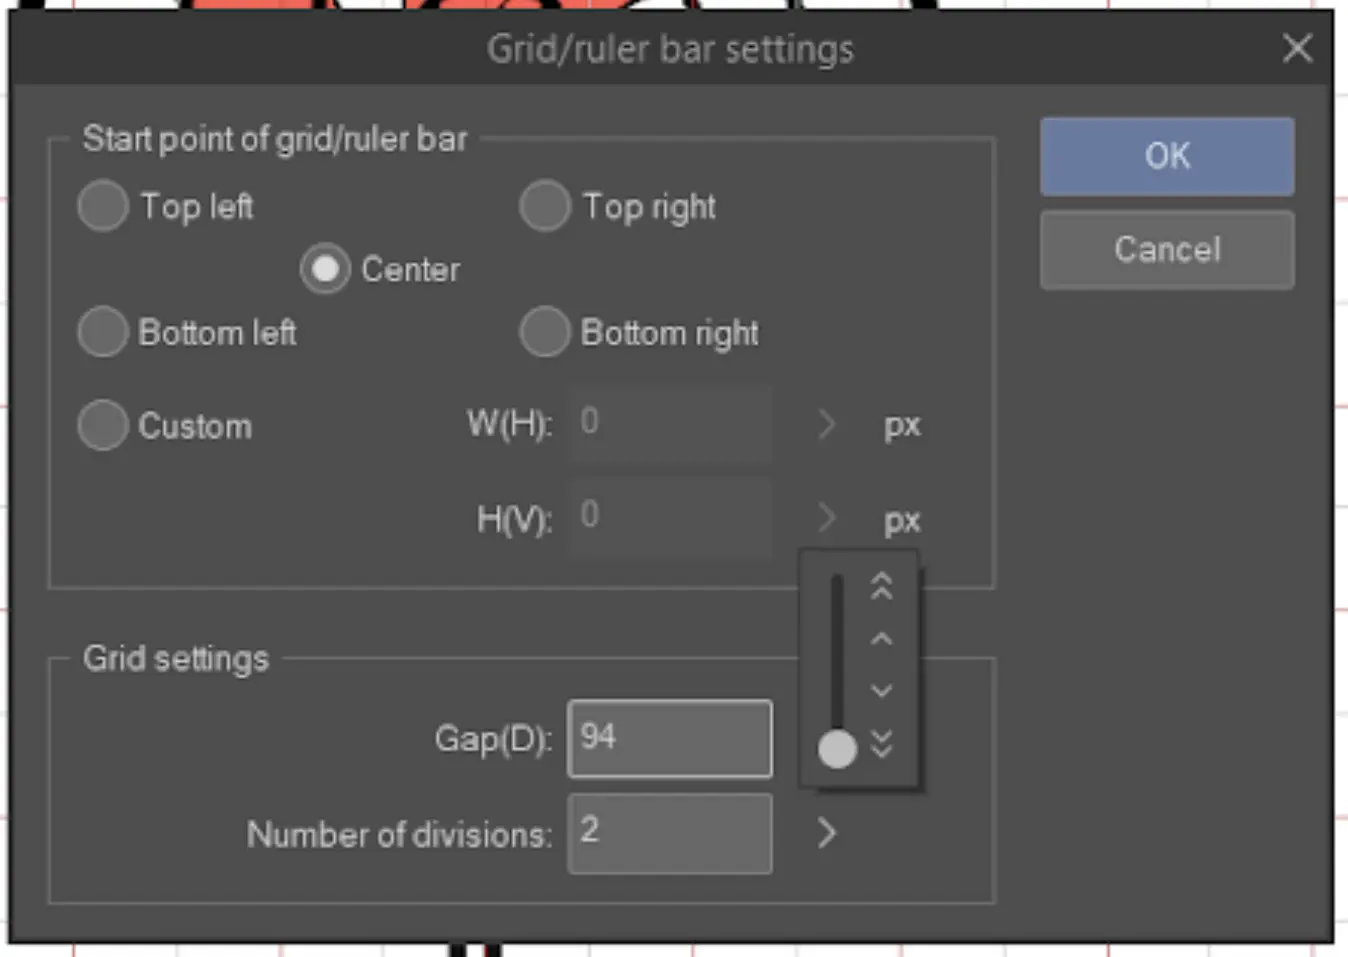 Grid/Ruler bar settings